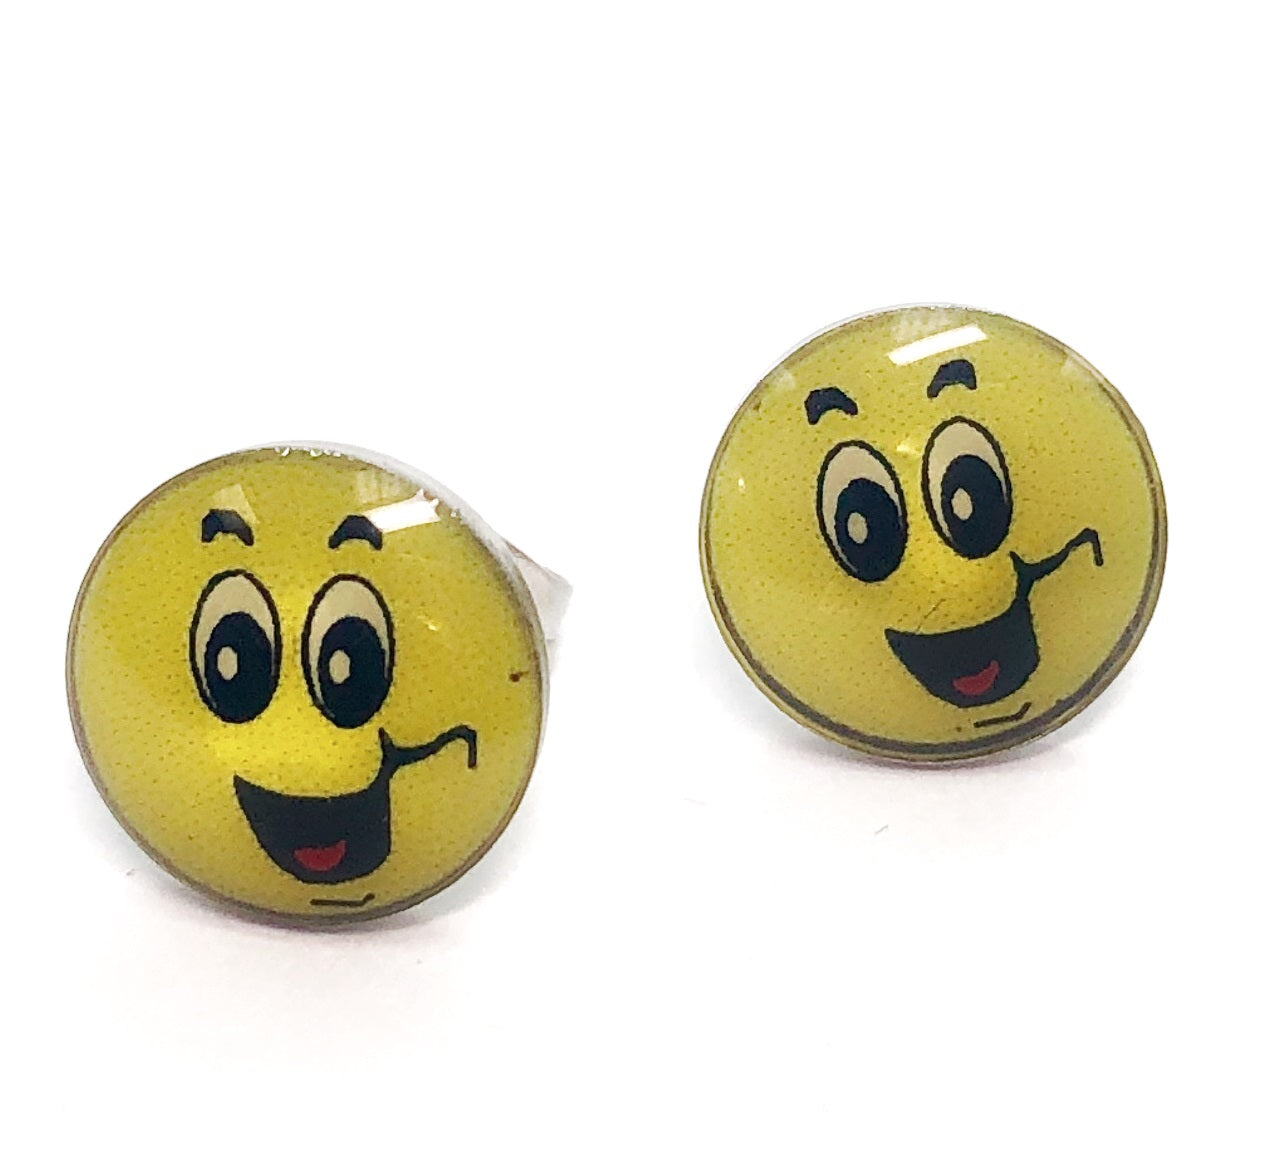 feshionn-iobi-emoji-smiley-enamel-button-stud-earrings